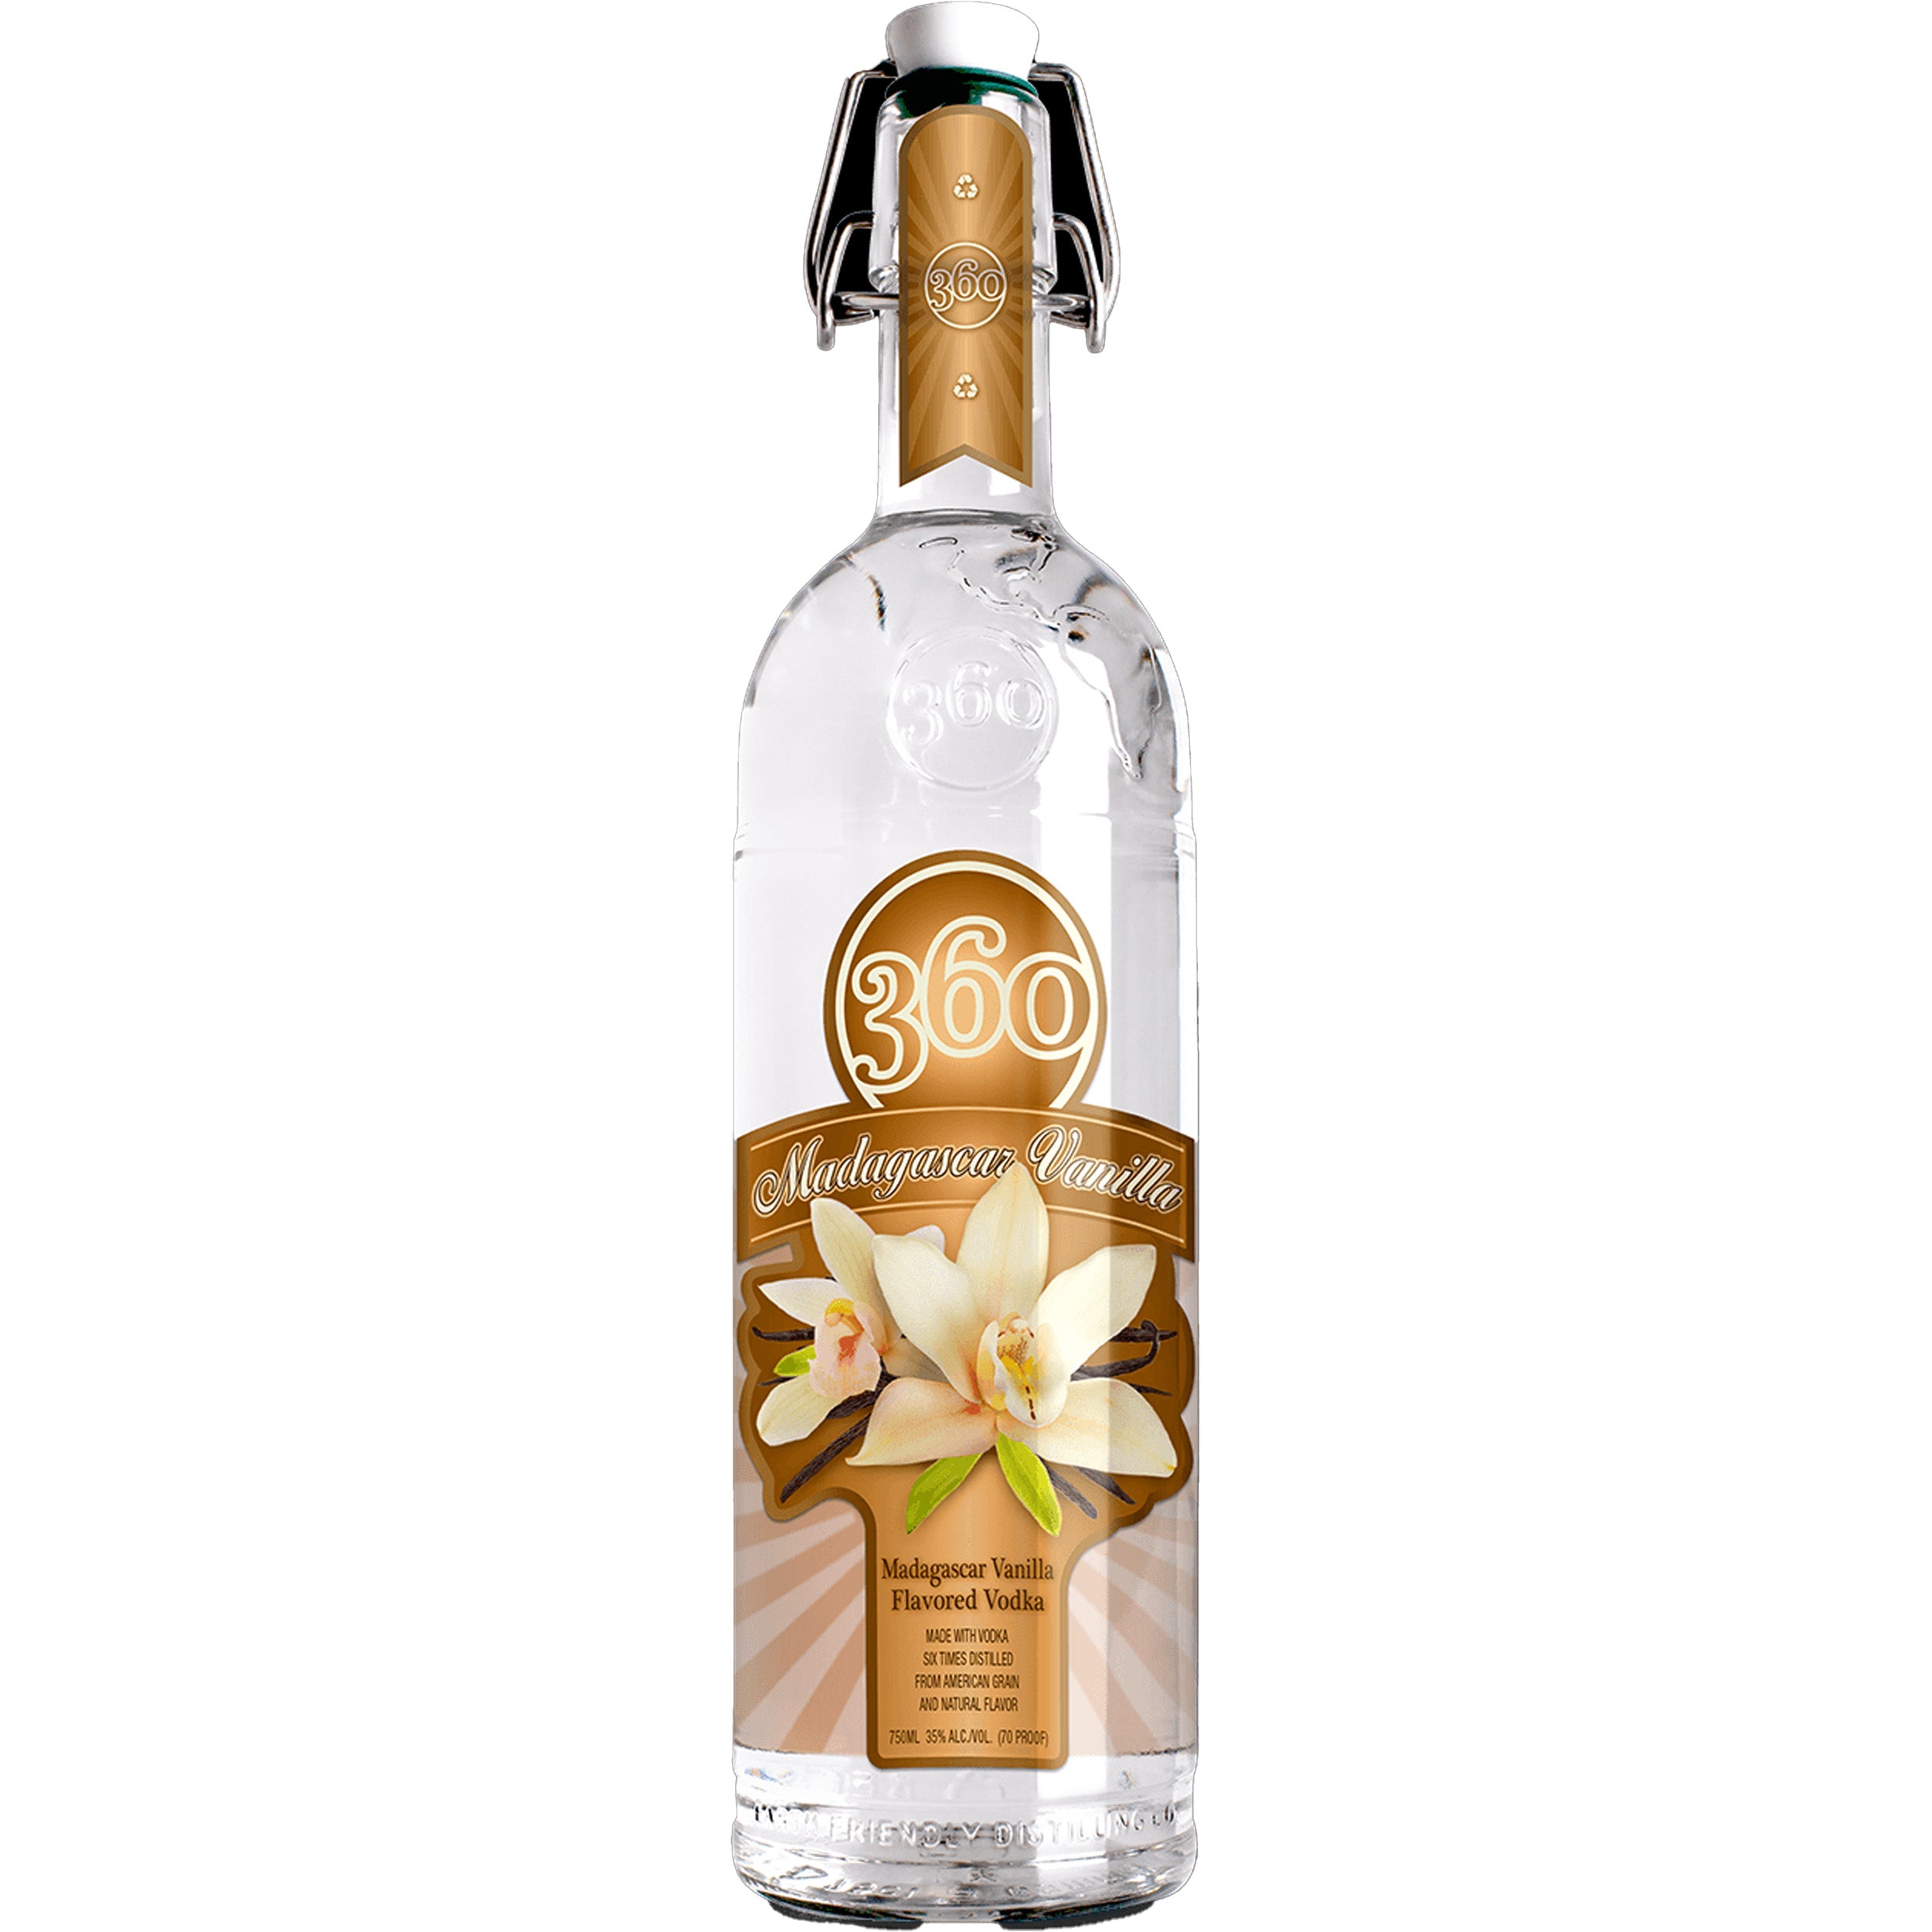 360 Madagascar Vanilla Chips Liquor Vodka –